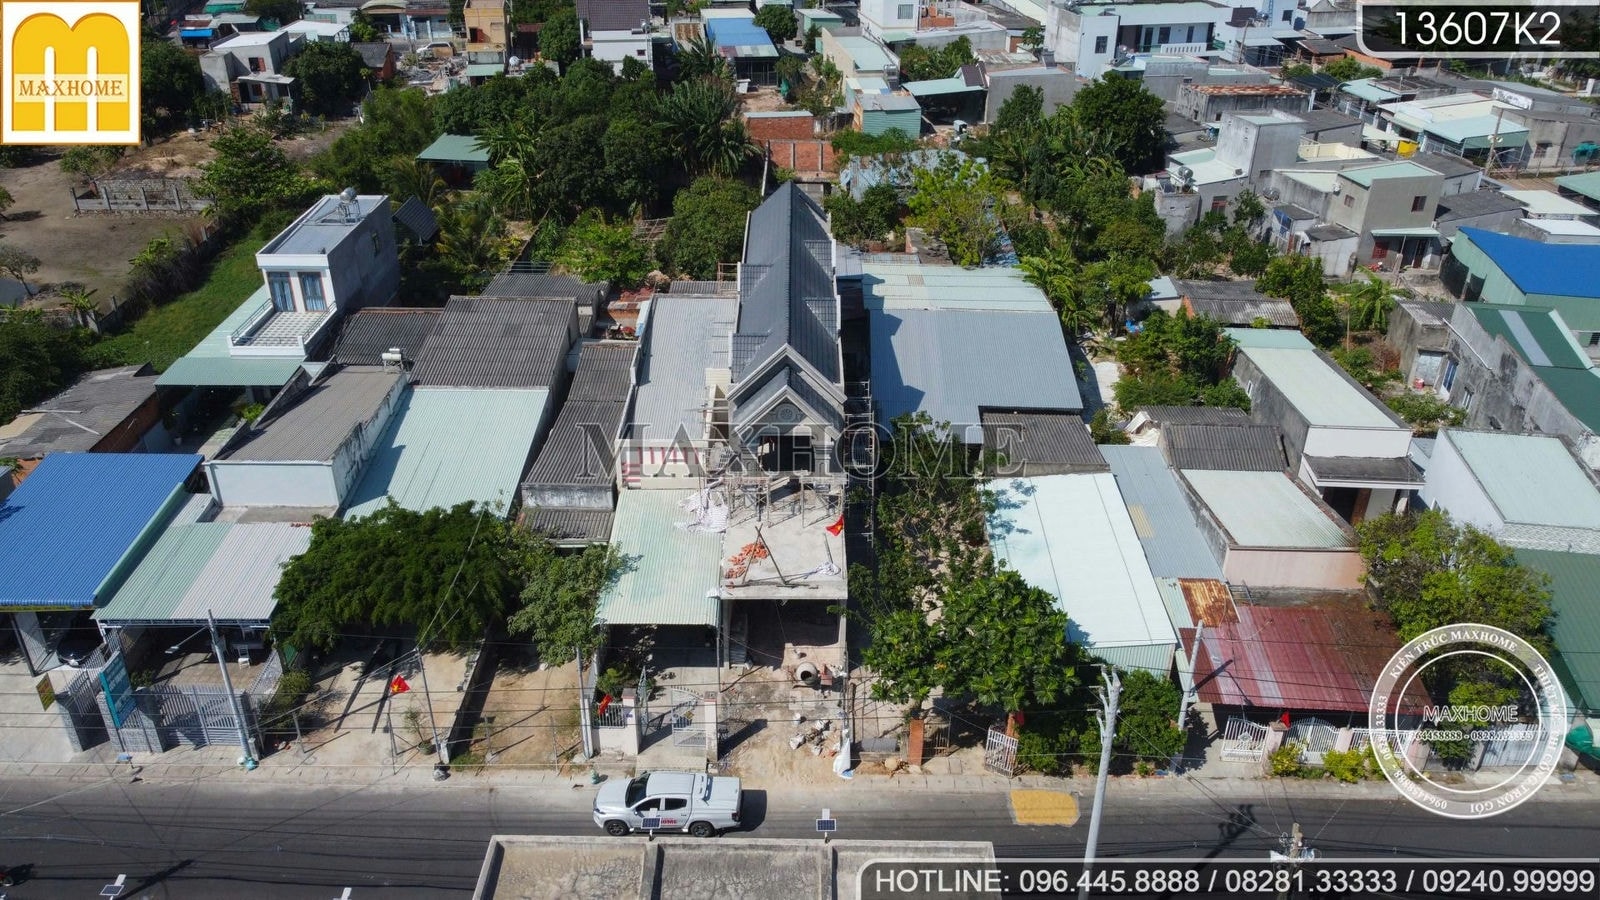 Ghé thăm tiến độ công trình nhà phố mái Thái tại Vũng Tàu I MH01600